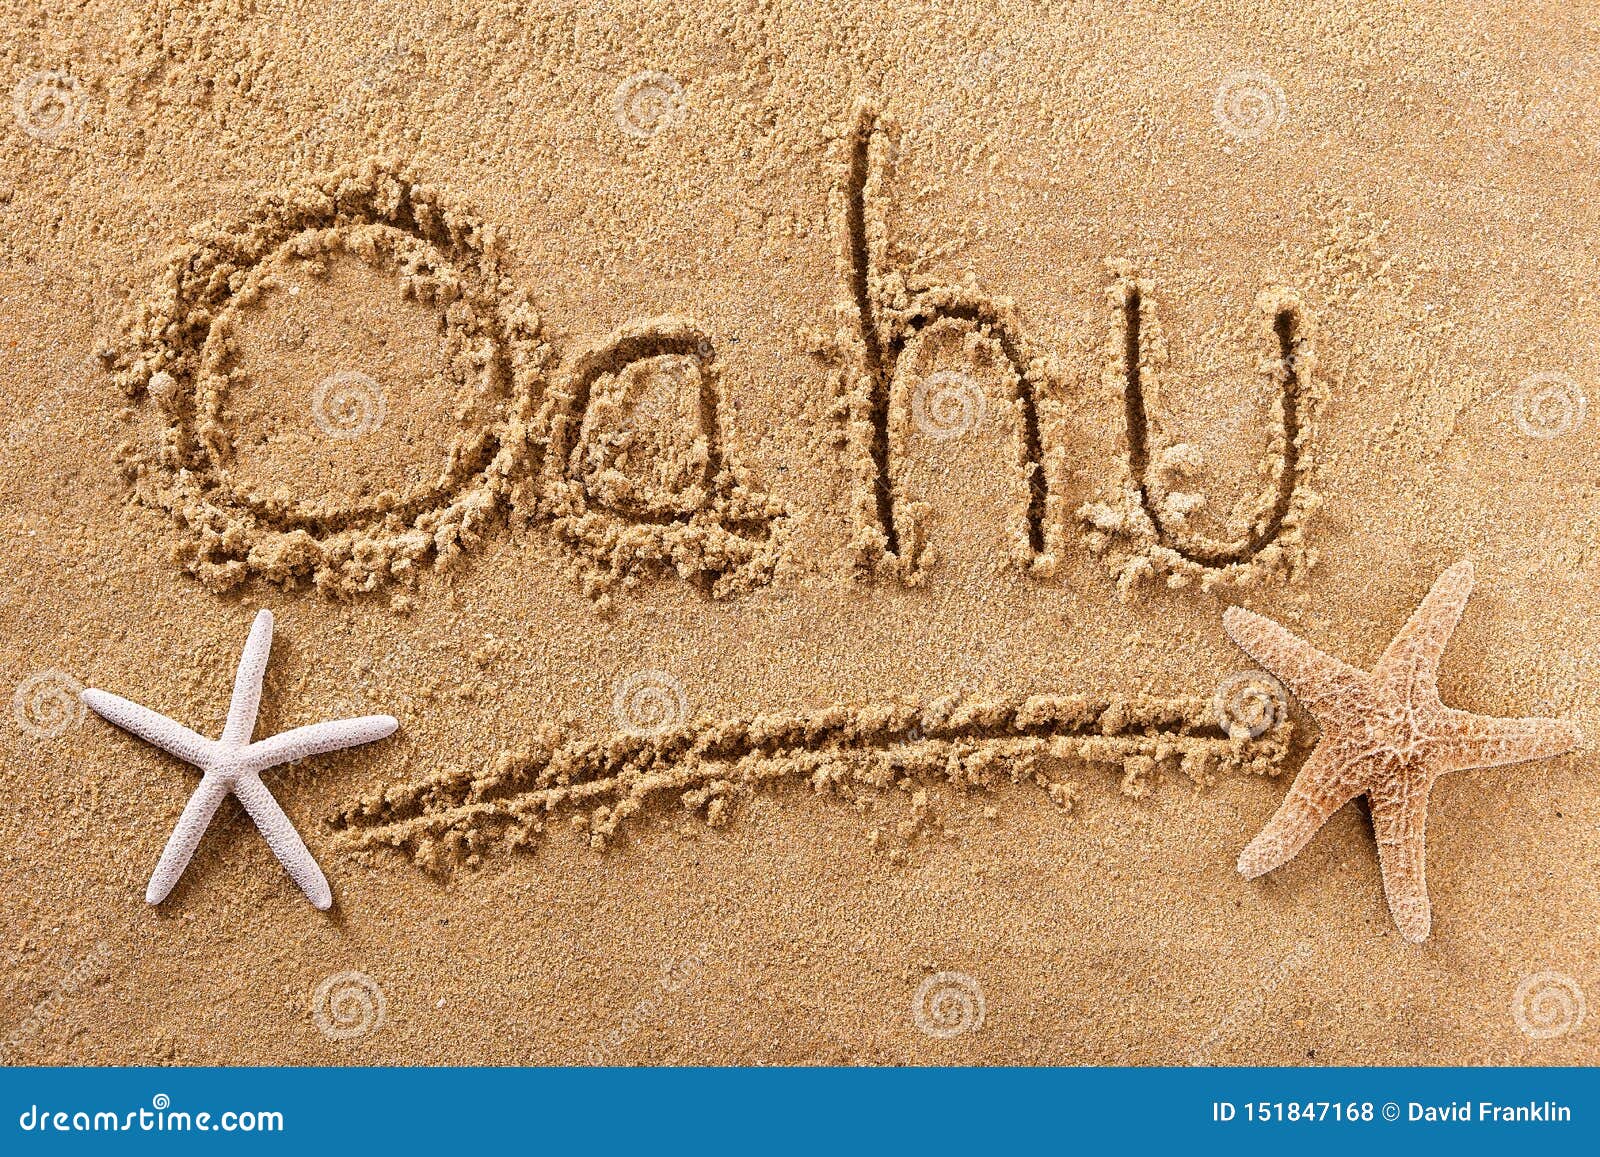 oahu hawaii handwritten beach sand message